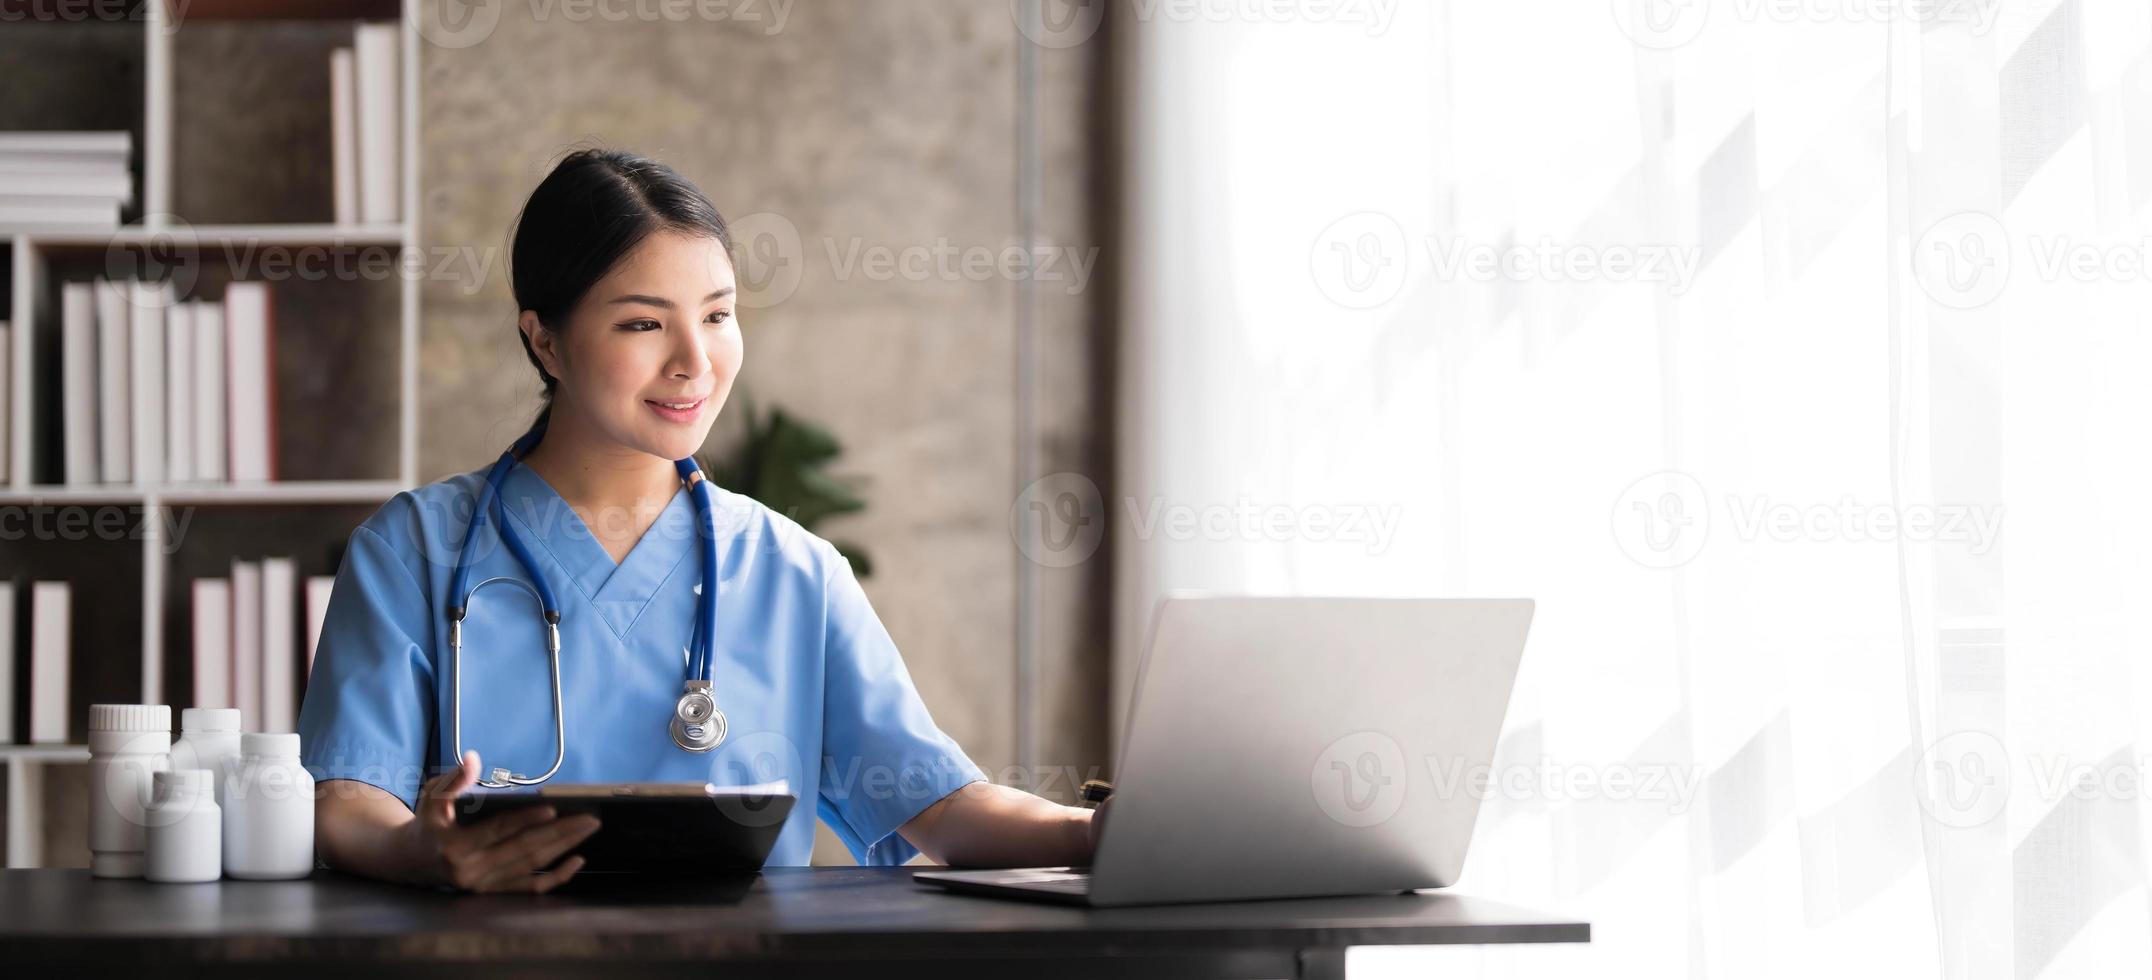 Junge schöne Frau des asiatischen Arztes, die lächelt, indem sie mit einem Laptop-Computer arbeitet und etwas auf Papierkram oder weißes Papier der Zwischenablage im Krankenhaus-Schreibtischbüro schreibt, medizinisches Konzept im Gesundheitswesen foto